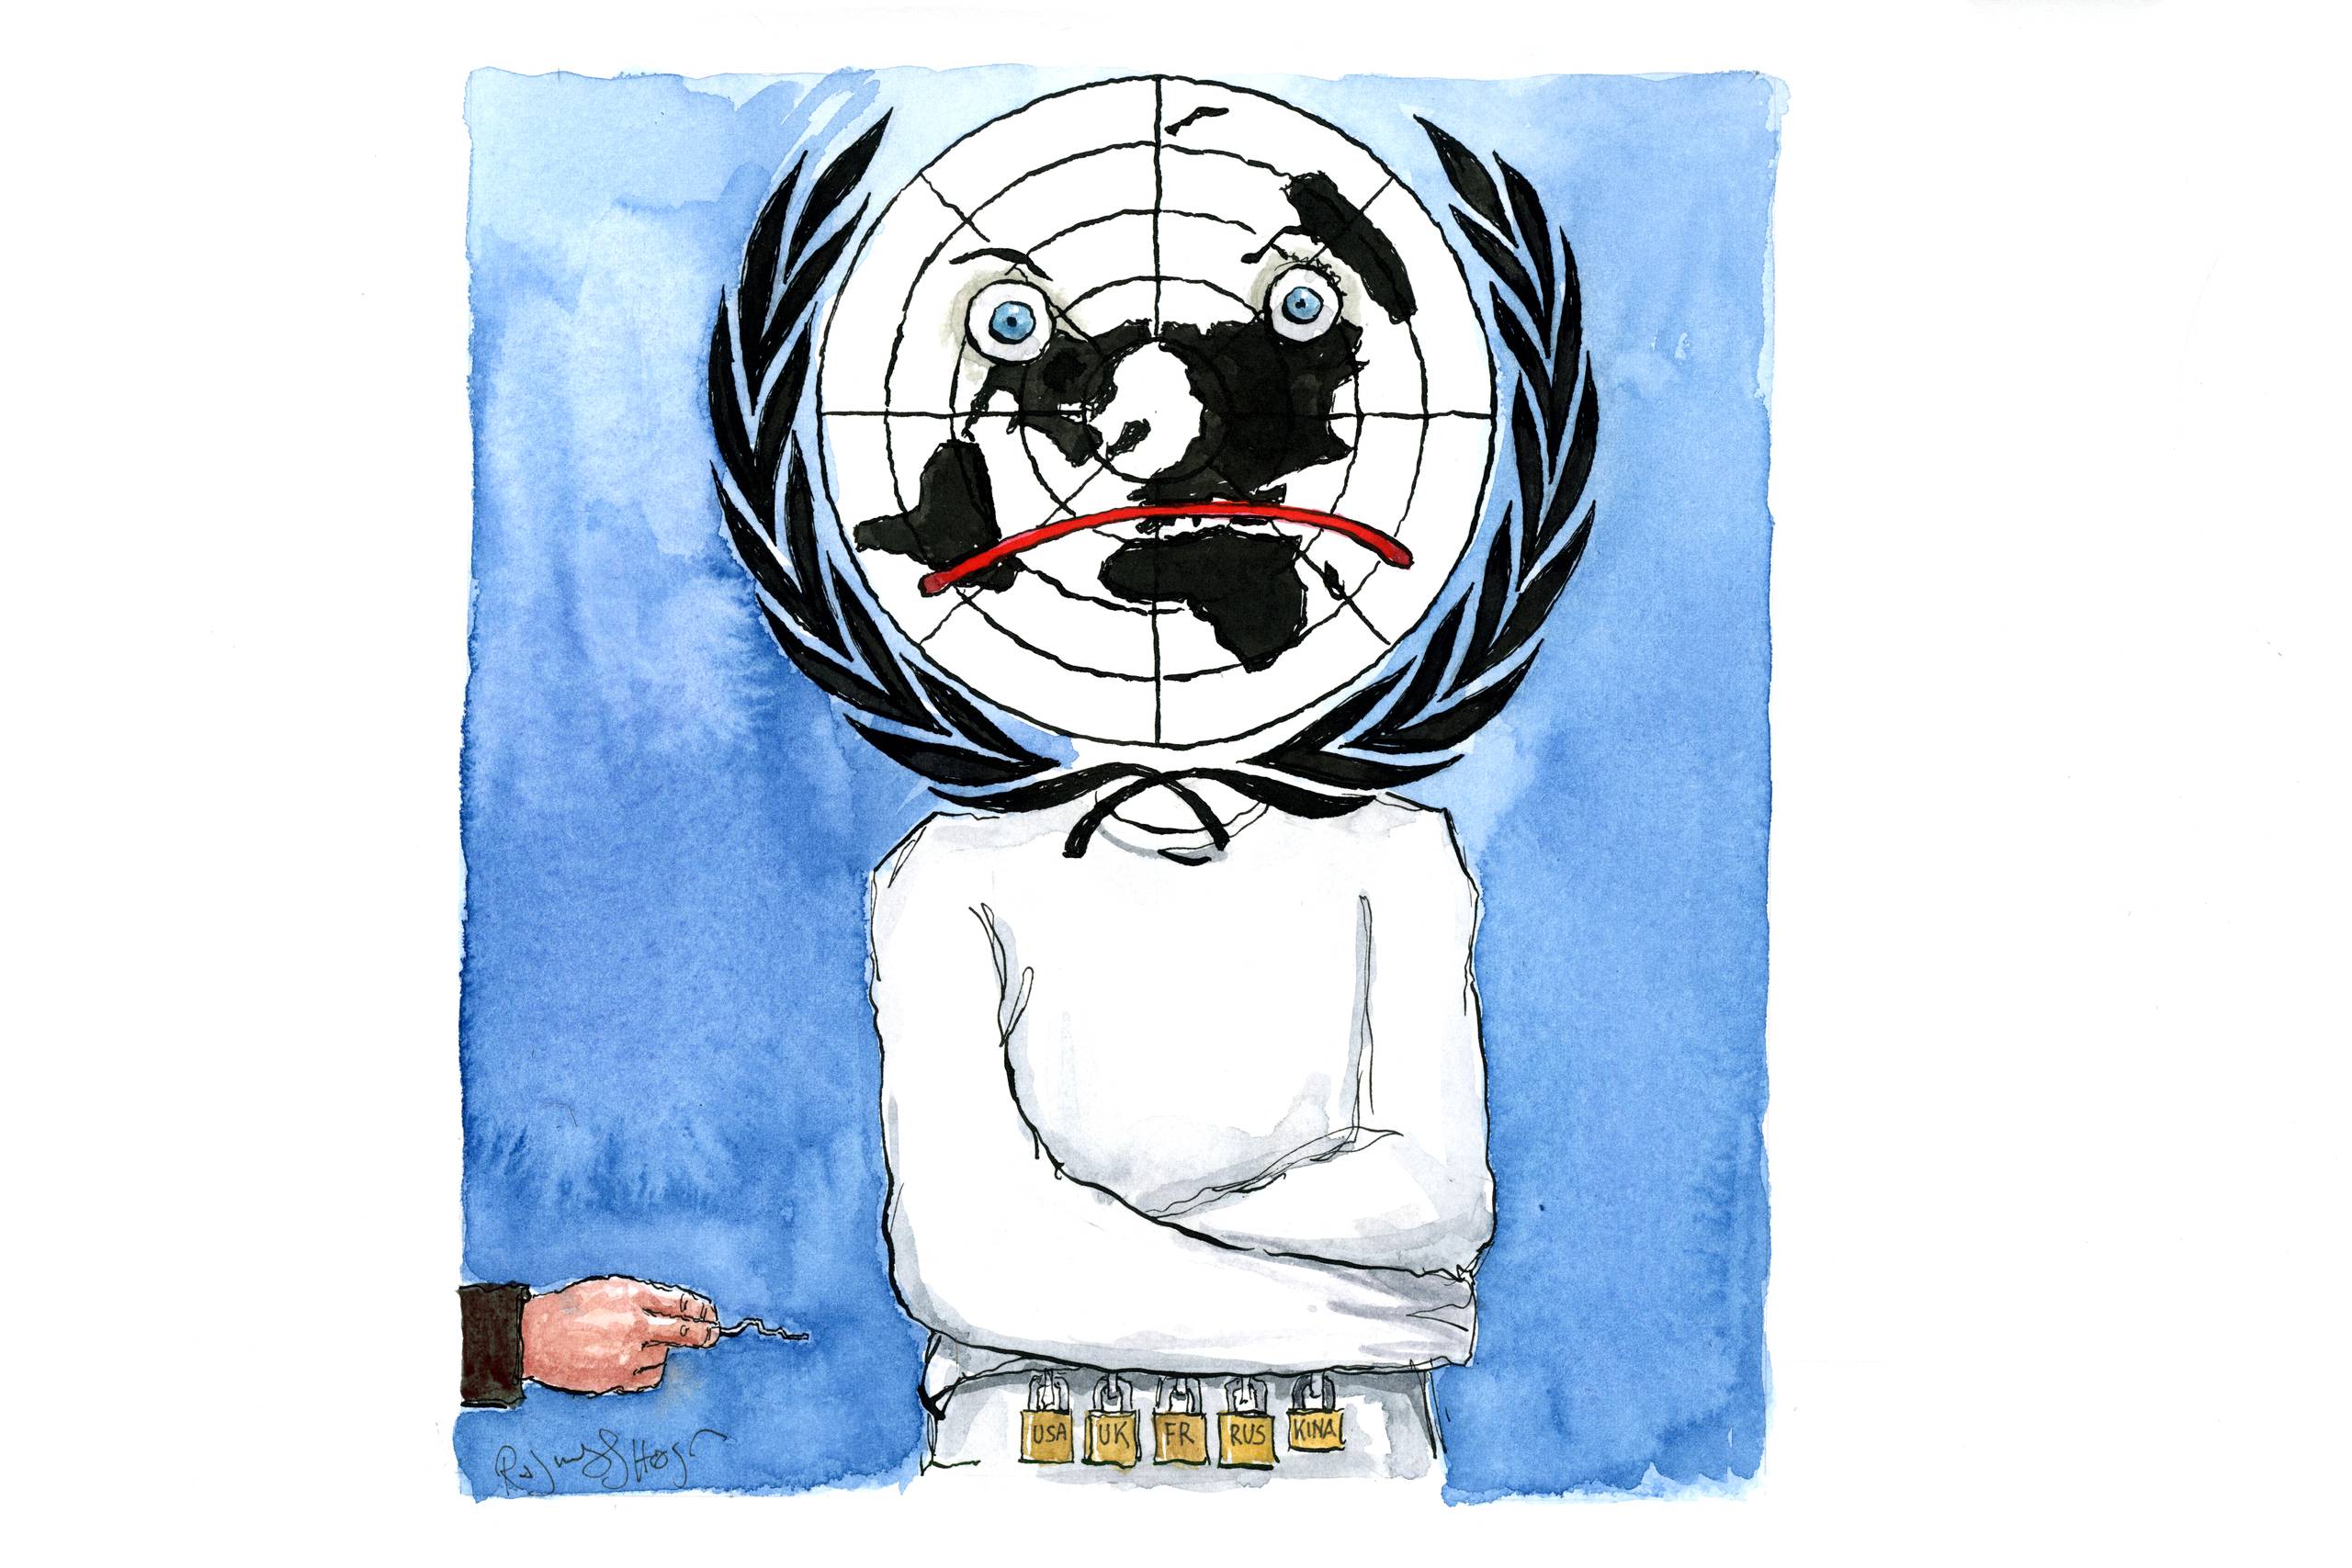 De permanente medlemmer af FN's Sikkerhedsråd kan i deres ofte fastlåste positioner fremkalde en handlingslammelse, der er skadelig for FN - og verden som sådan, mener Viktor Munck. Tegning: Rasmus Sand Høyer